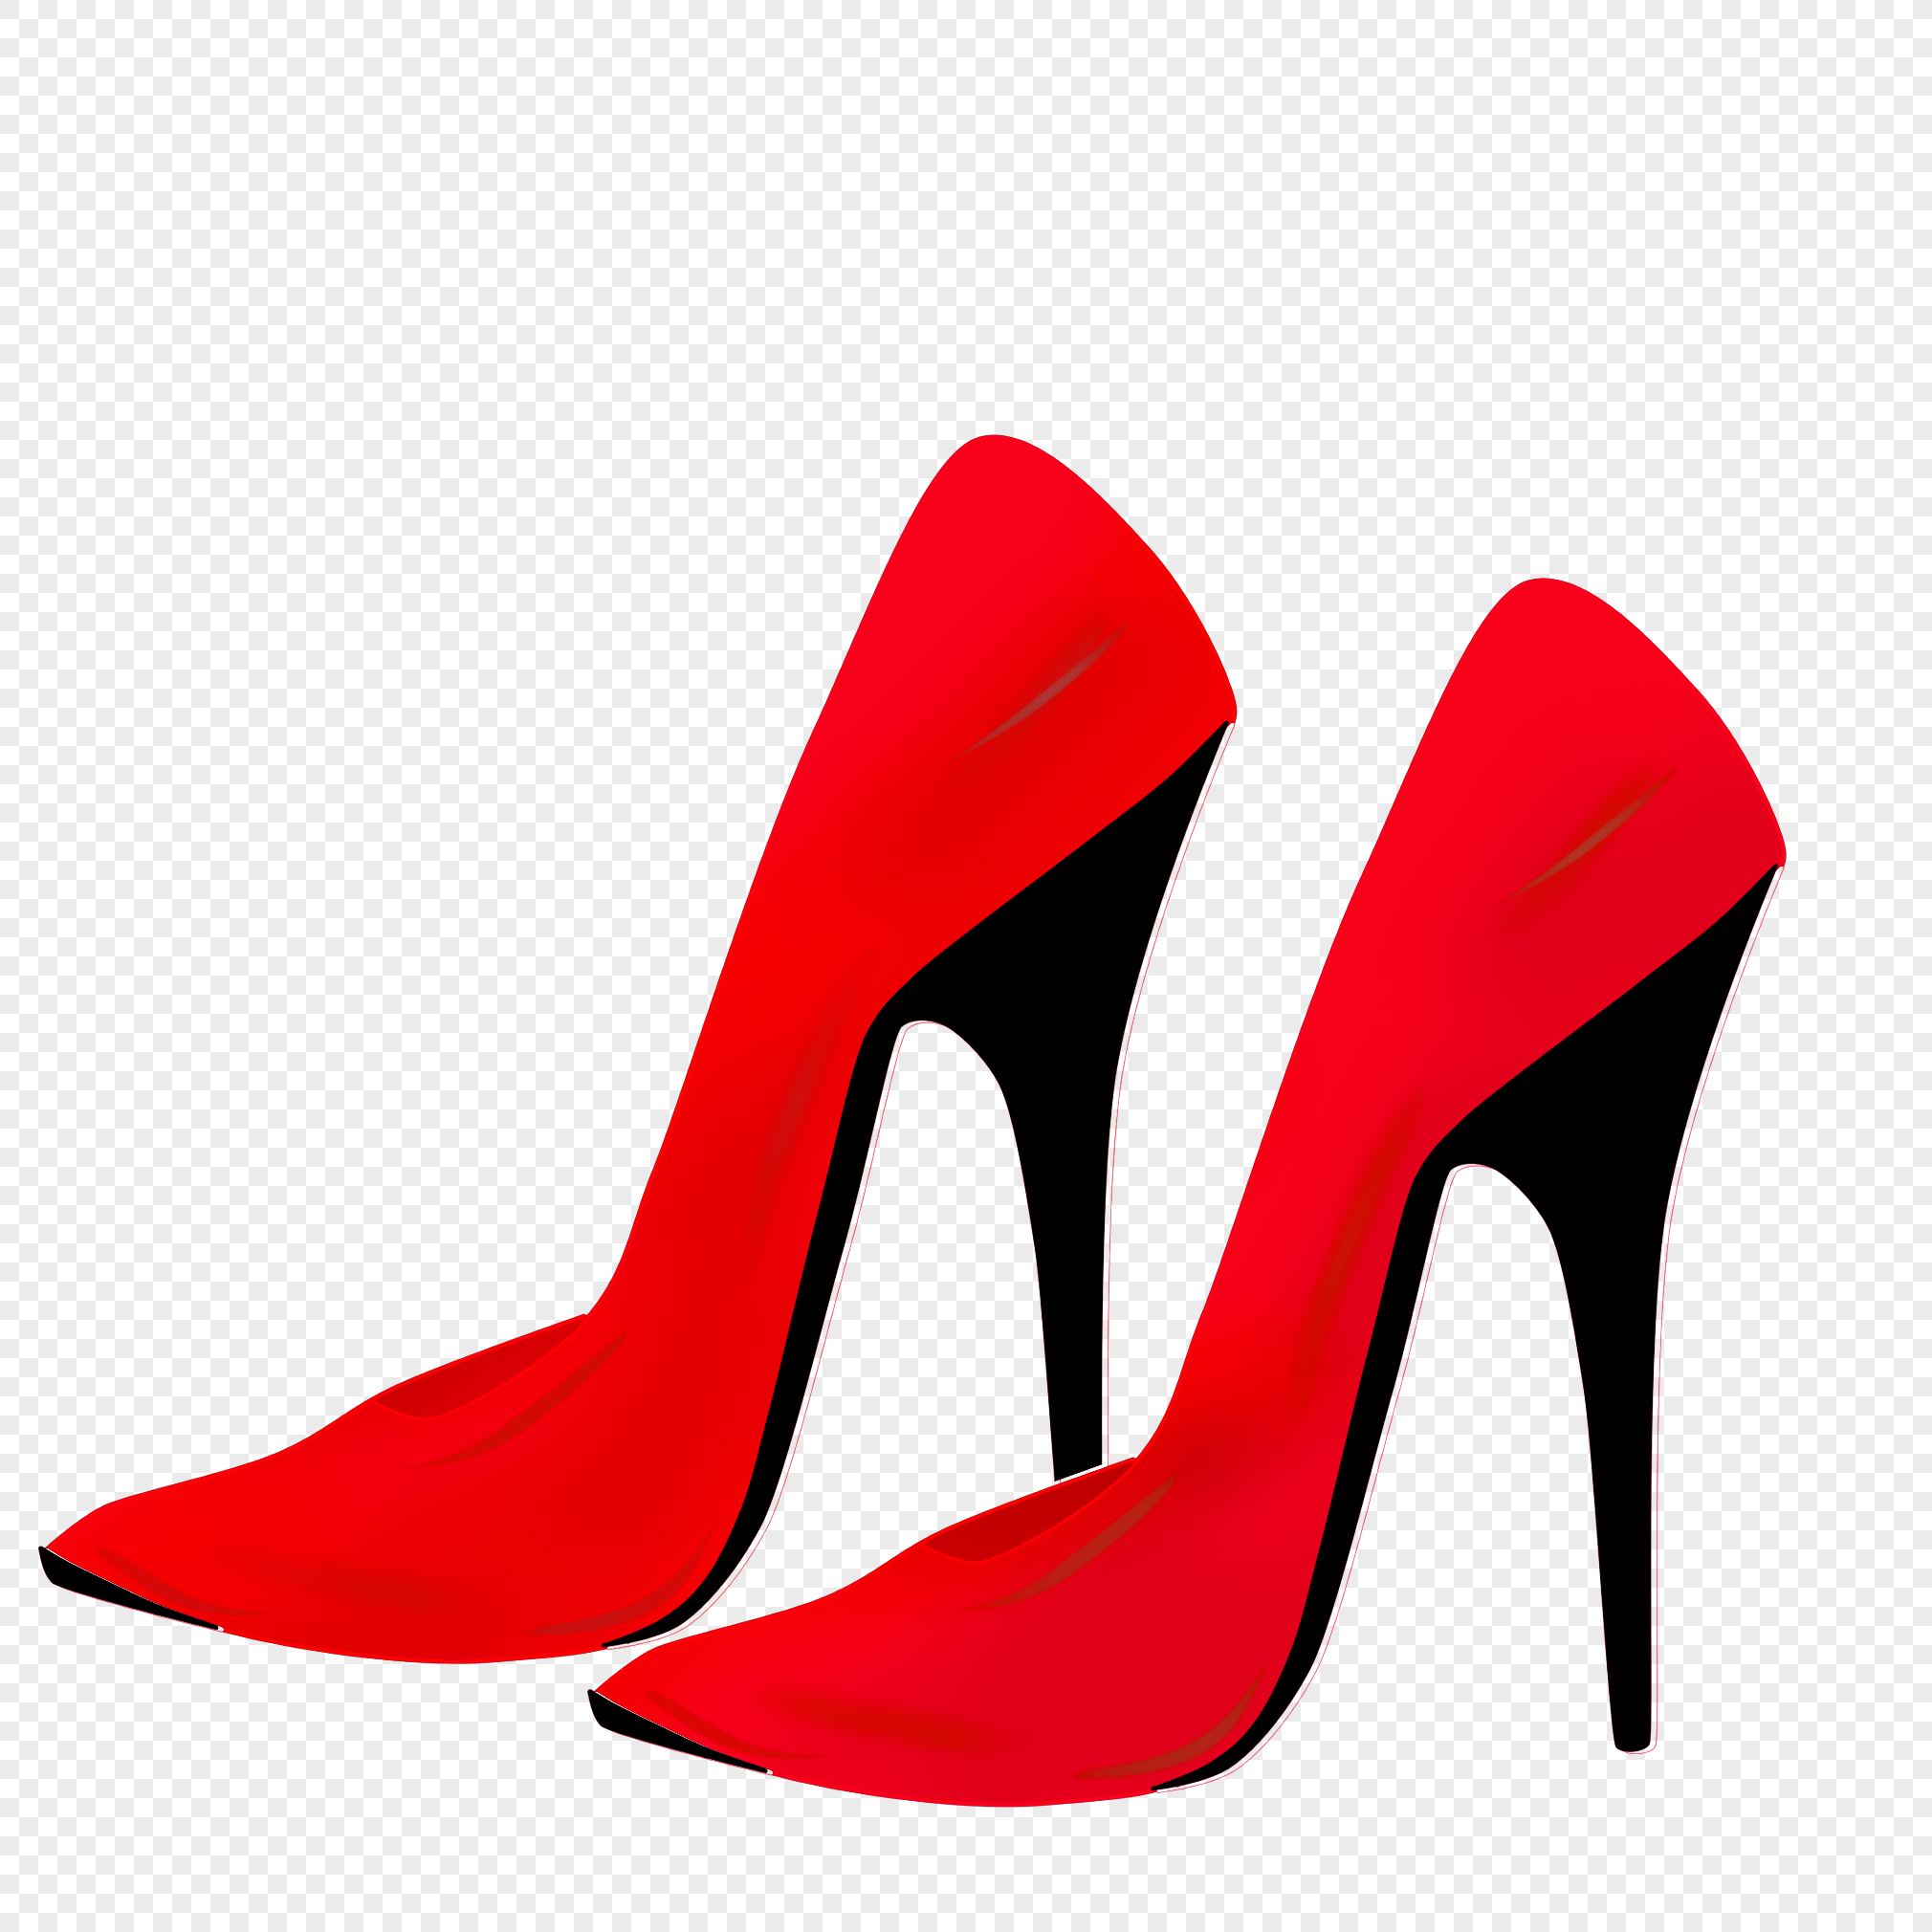 蝴蝶结婚鞋 红色 鞋子红鞋 结 婚鞋 红色高跟鞋 婚礼鞋 女HX006报价/最低价_易购频道